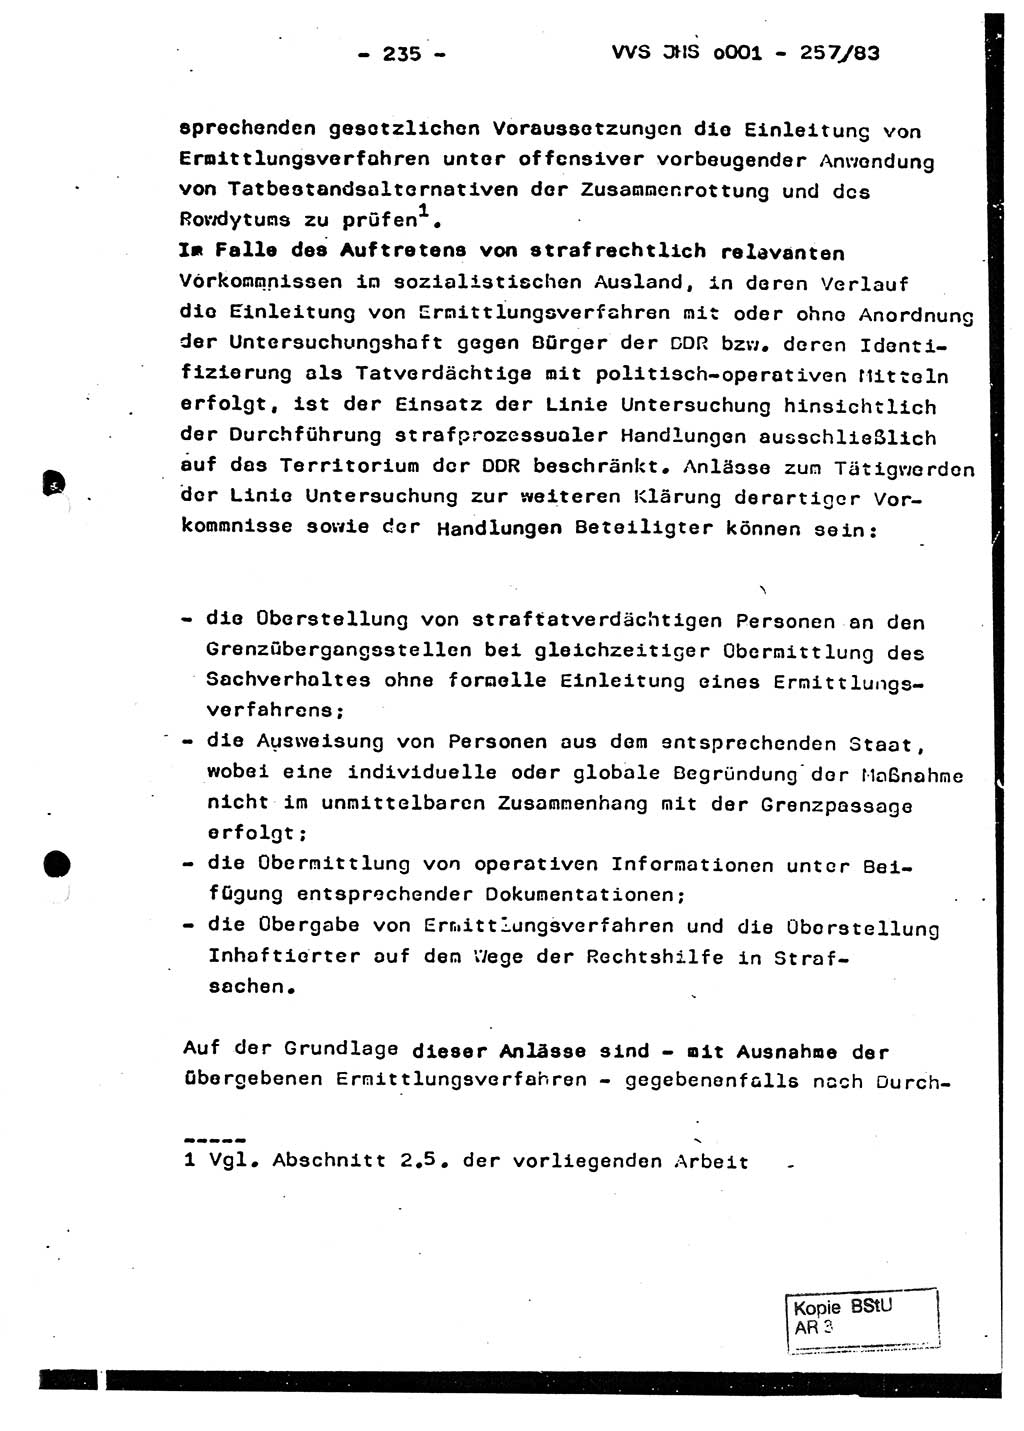 Dissertation, Oberst Helmut Lubas (BV Mdg.), Oberstleutnant Manfred Eschberger (HA IX), Oberleutnant Hans-Jürgen Ludwig (JHS), Ministerium für Staatssicherheit (MfS) [Deutsche Demokratische Republik (DDR)], Juristische Hochschule (JHS), Vertrauliche Verschlußsache (VVS) o001-257/83, Potsdam 1983, Seite 235 (Diss. MfS DDR JHS VVS o001-257/83 1983, S. 235)